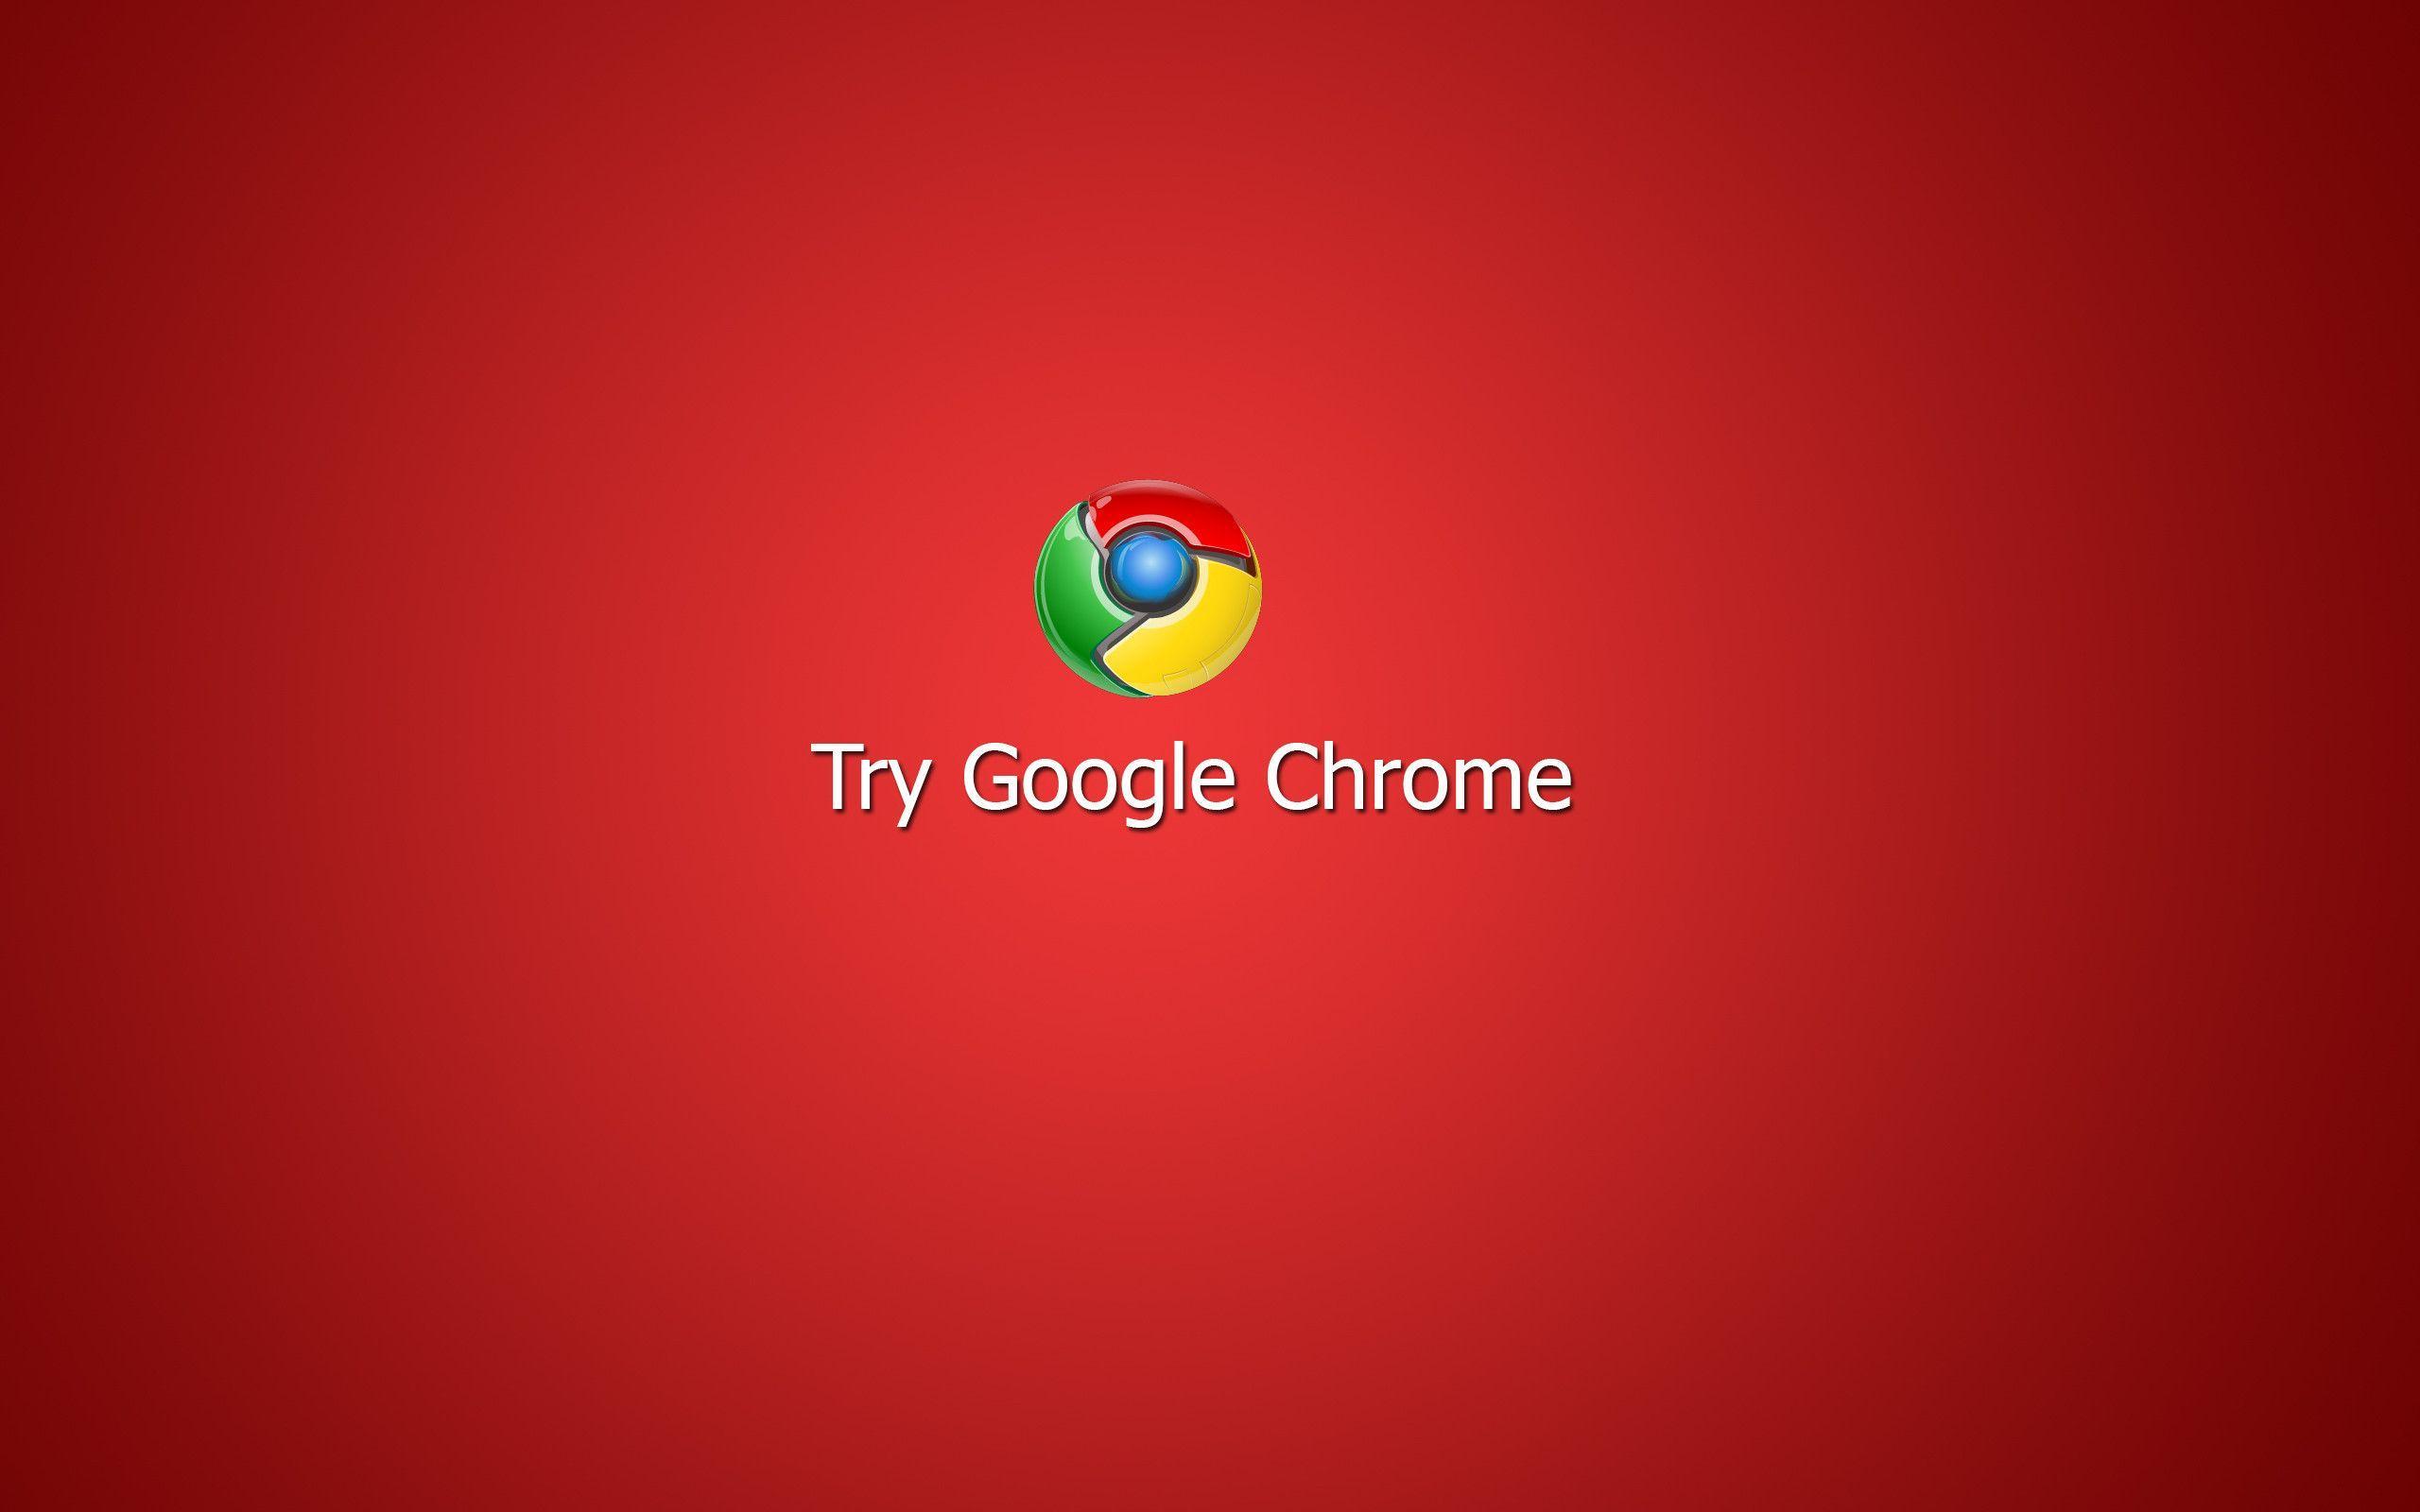 Try Google Chrome Wallpaper